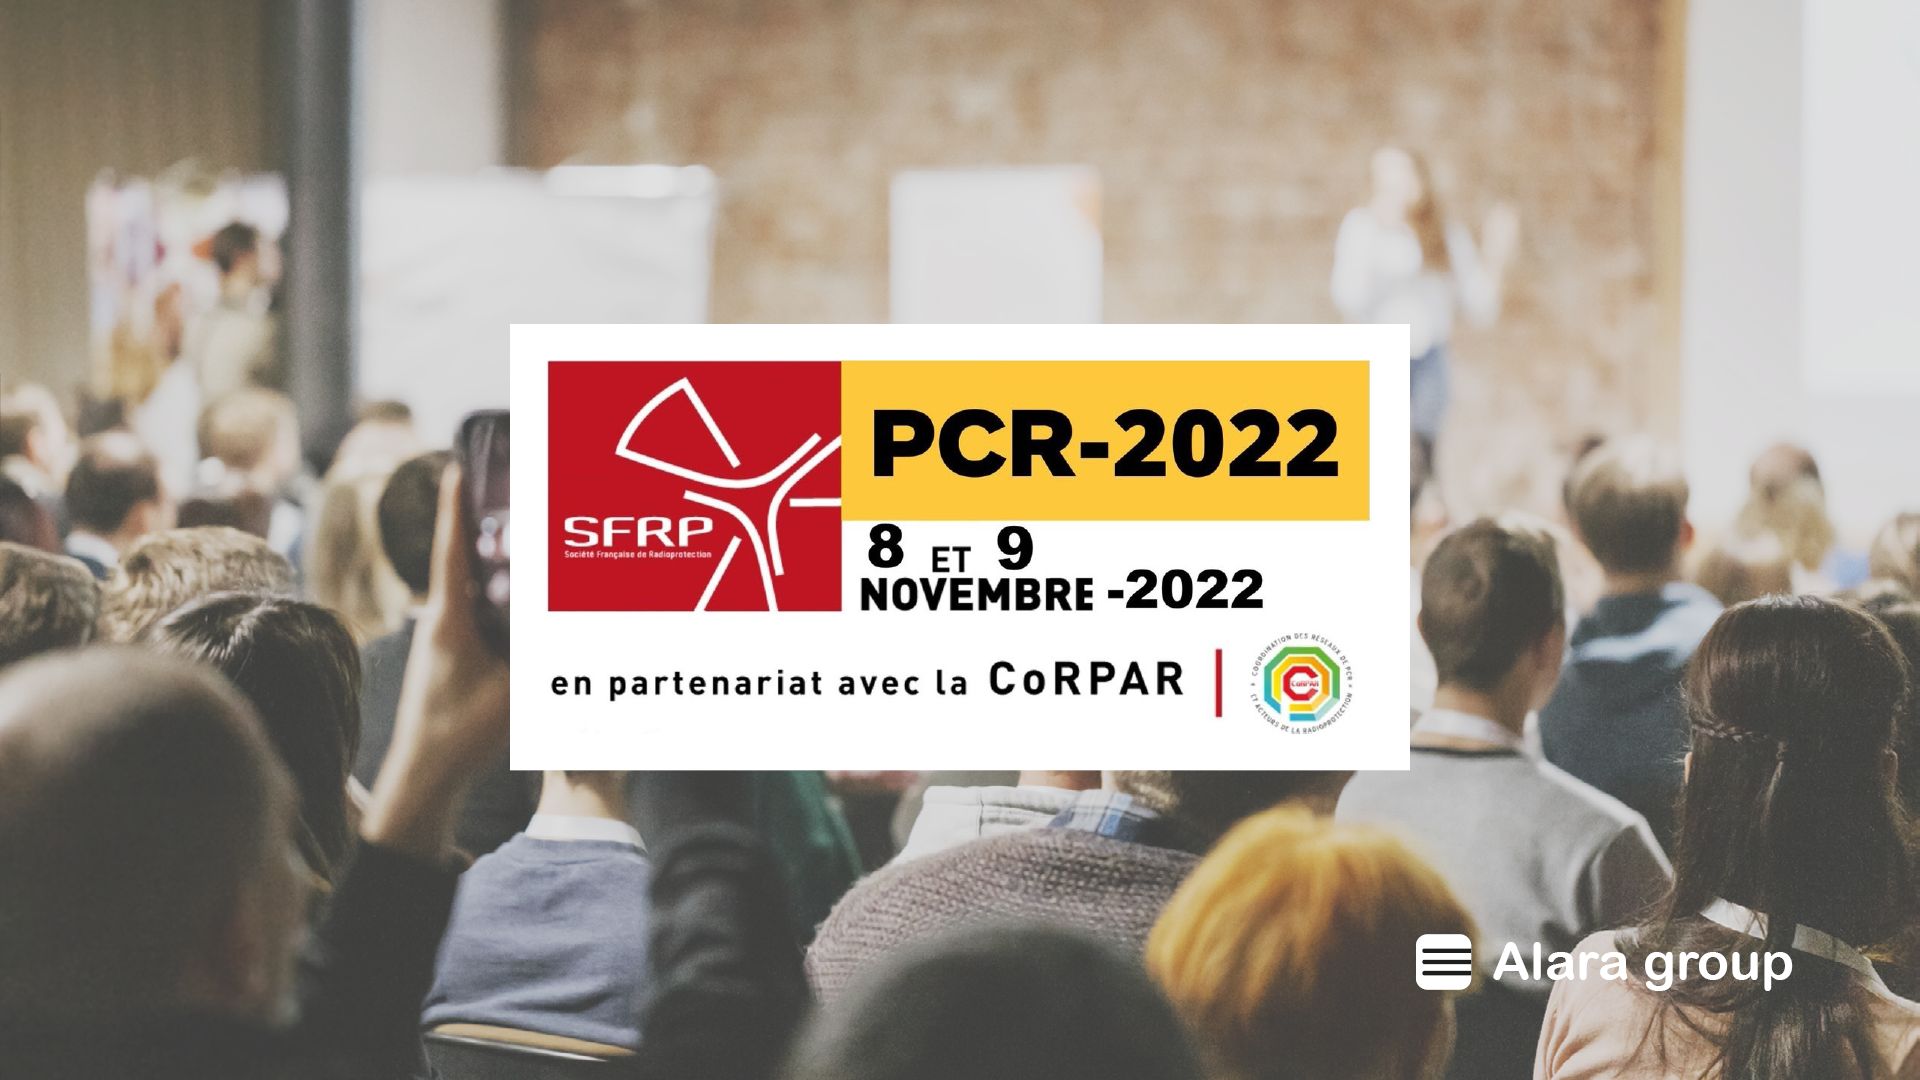 [EVENT] SFRP 2022 – Rencontres des Personnes Compétentes en Radioprotection